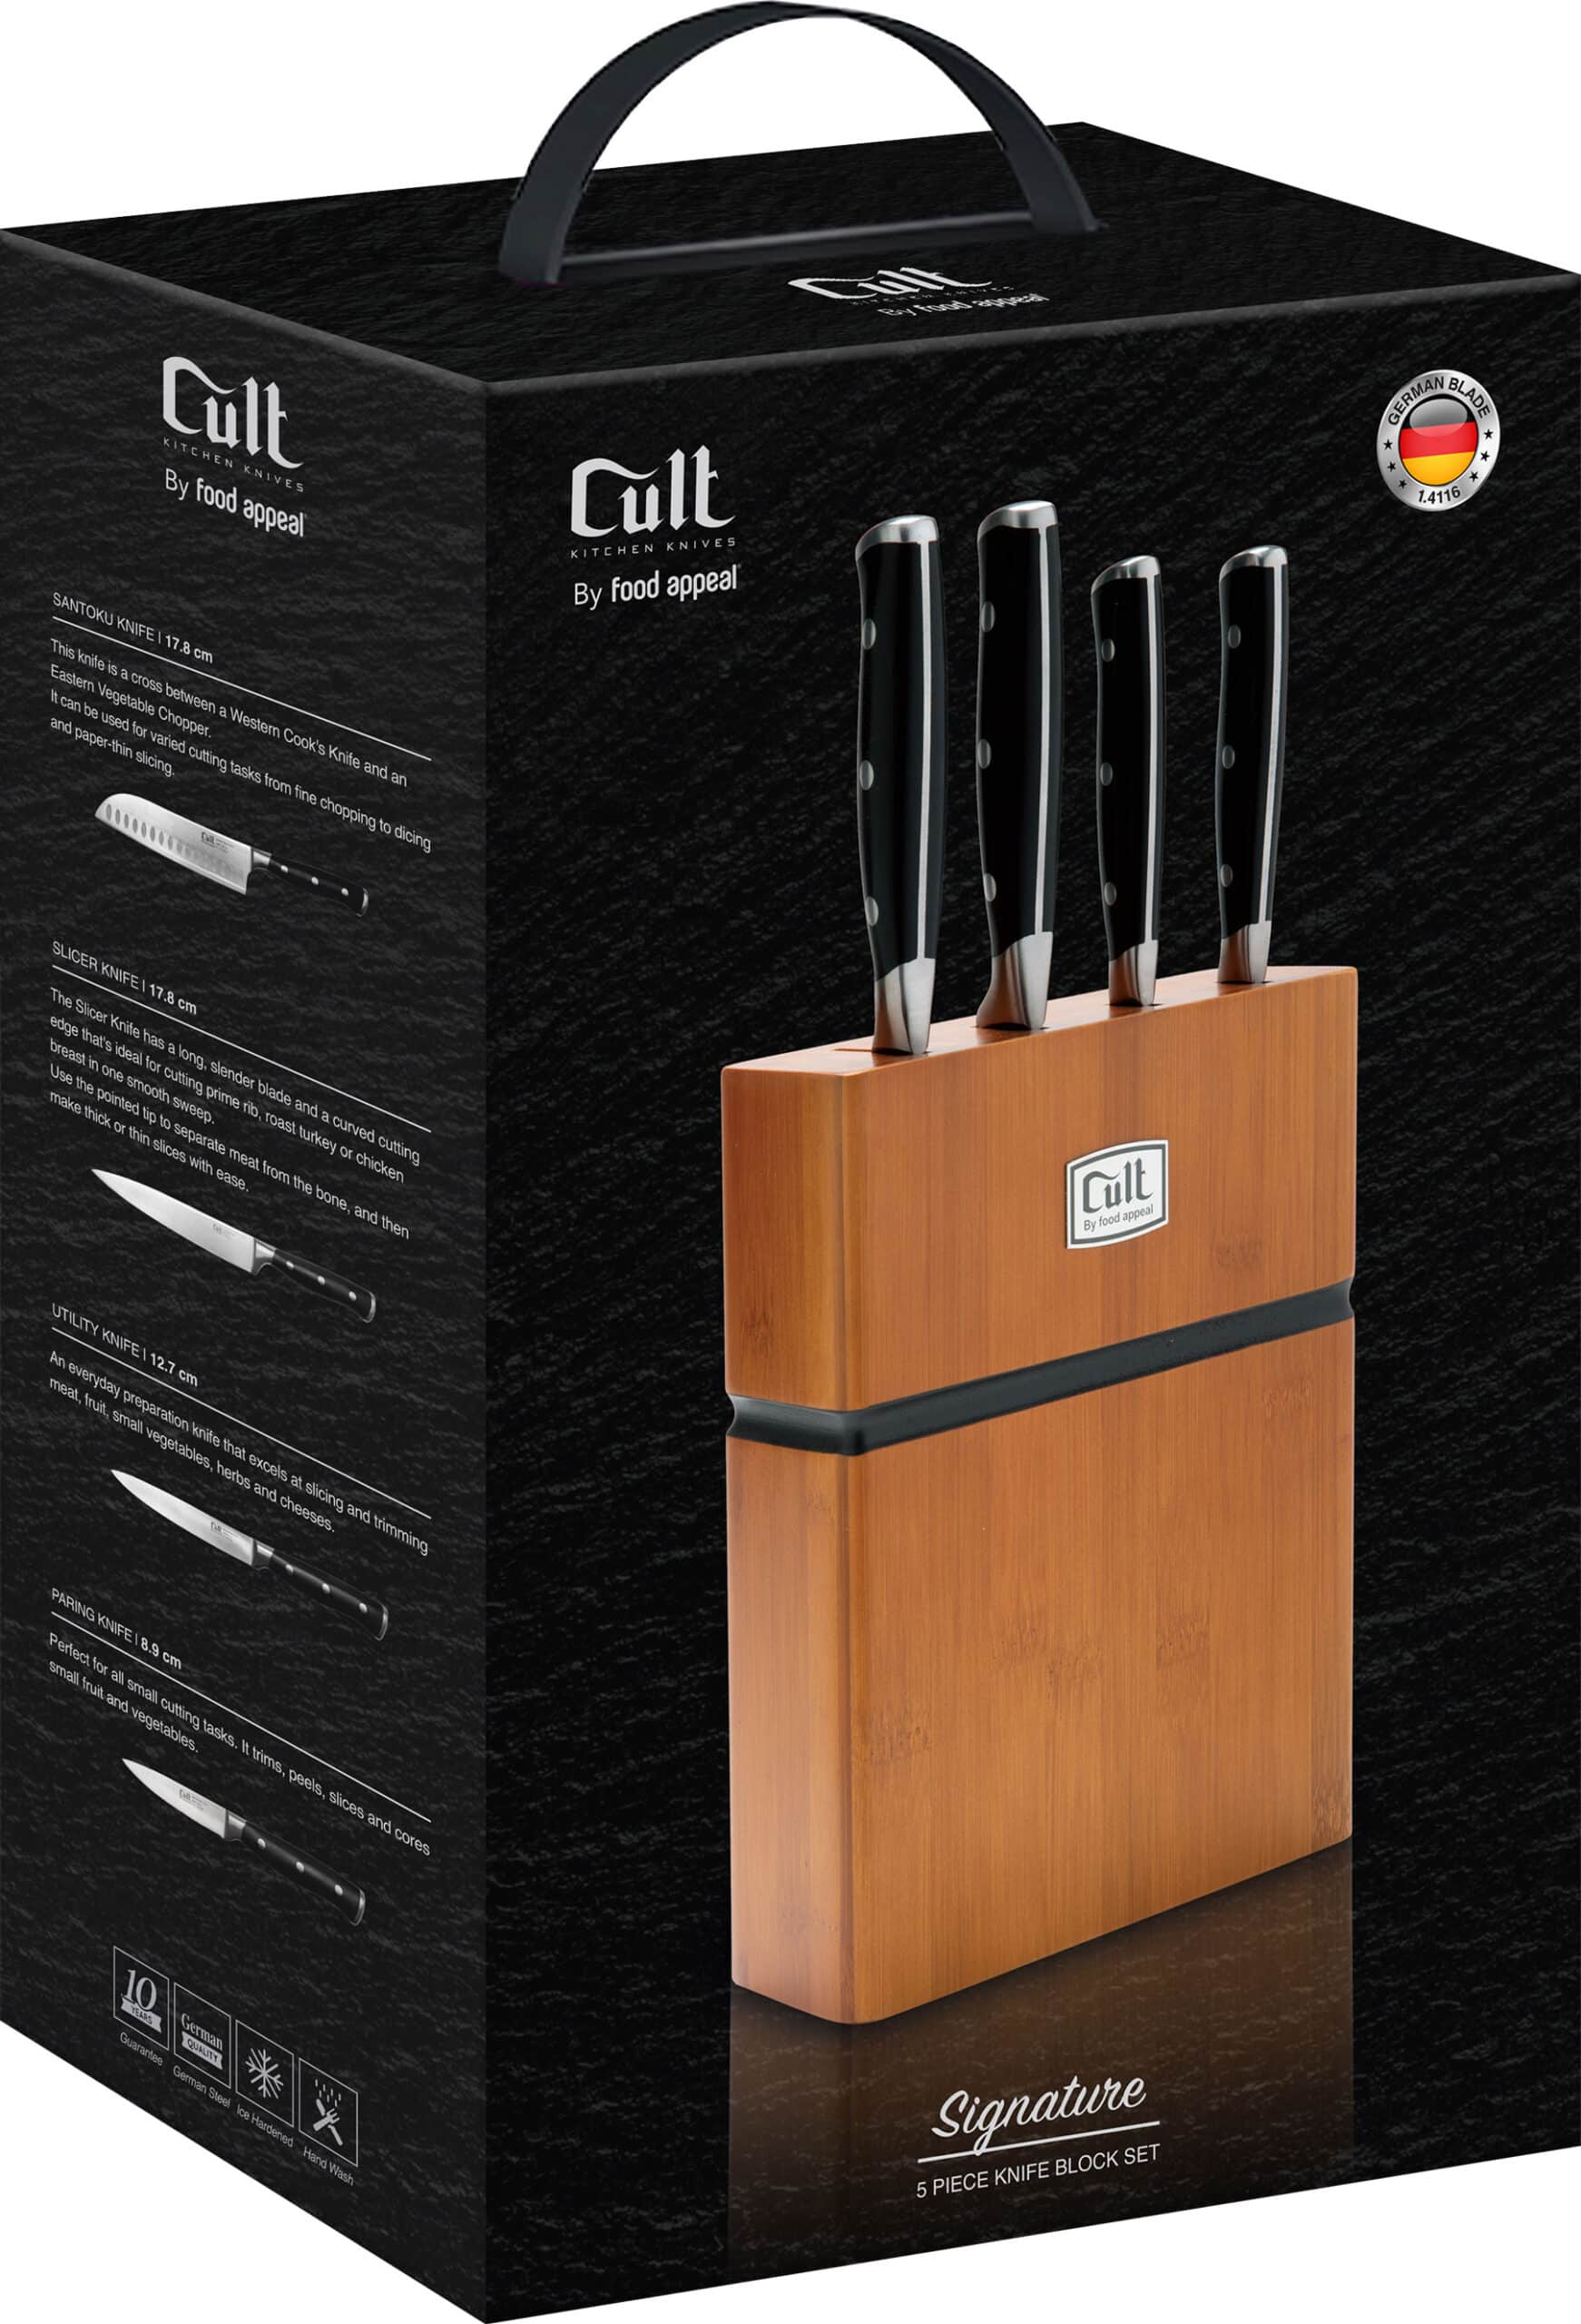 בלוק סכינים 5 חלקים הכולל 4 סכינים + מעמד עץ Food Appeal Cult Signature פוד אפיל